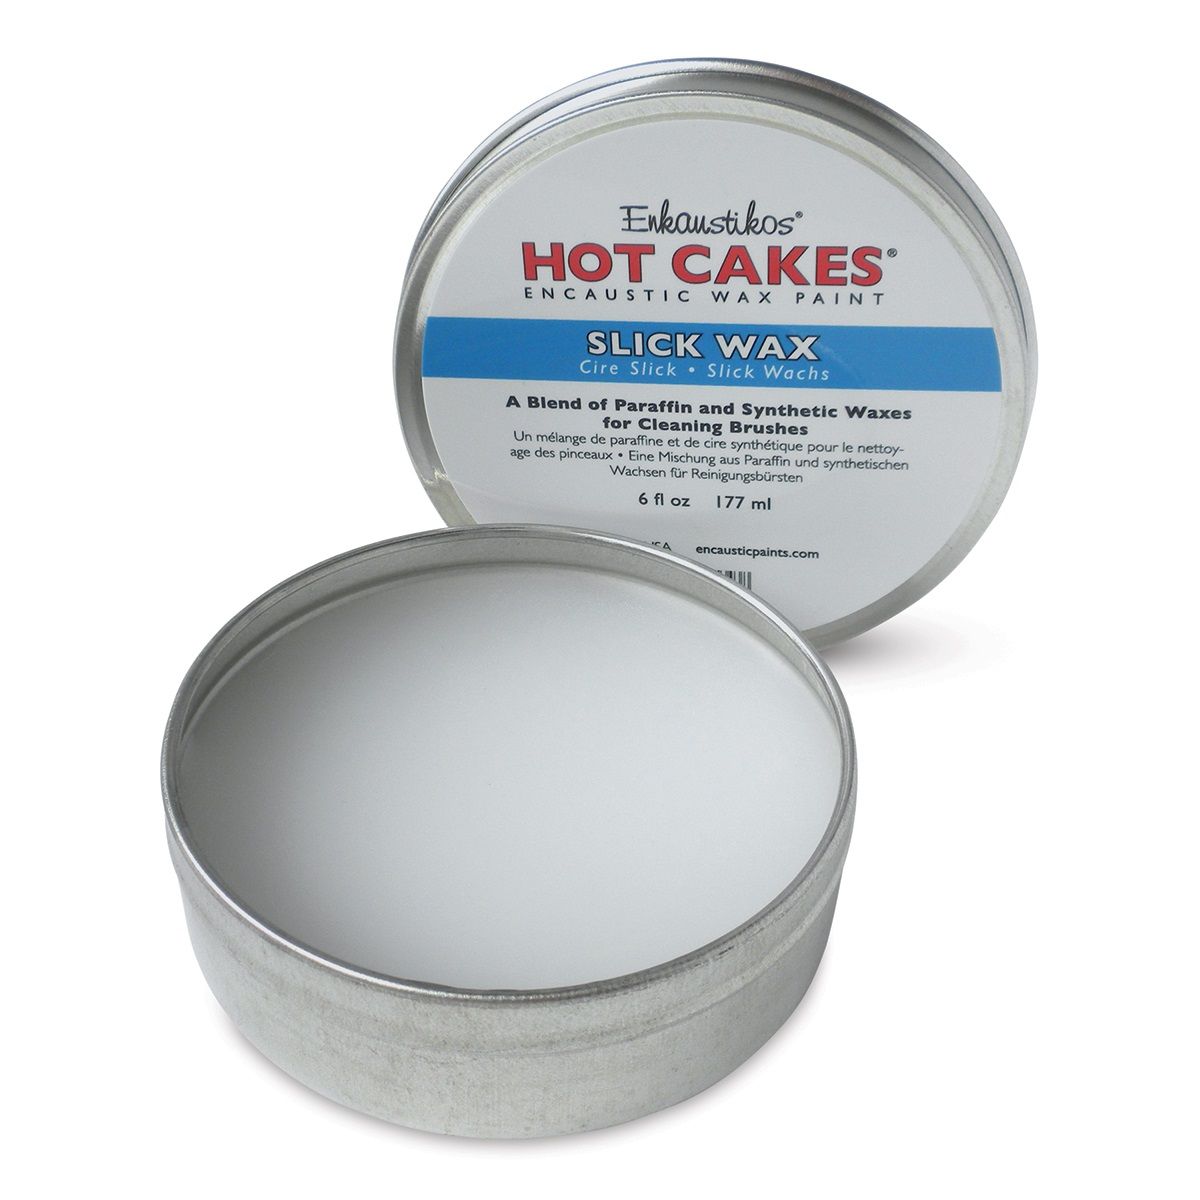 Enkaustikos Hot Cakes Slick Wax, 177ml/6oz In Tin